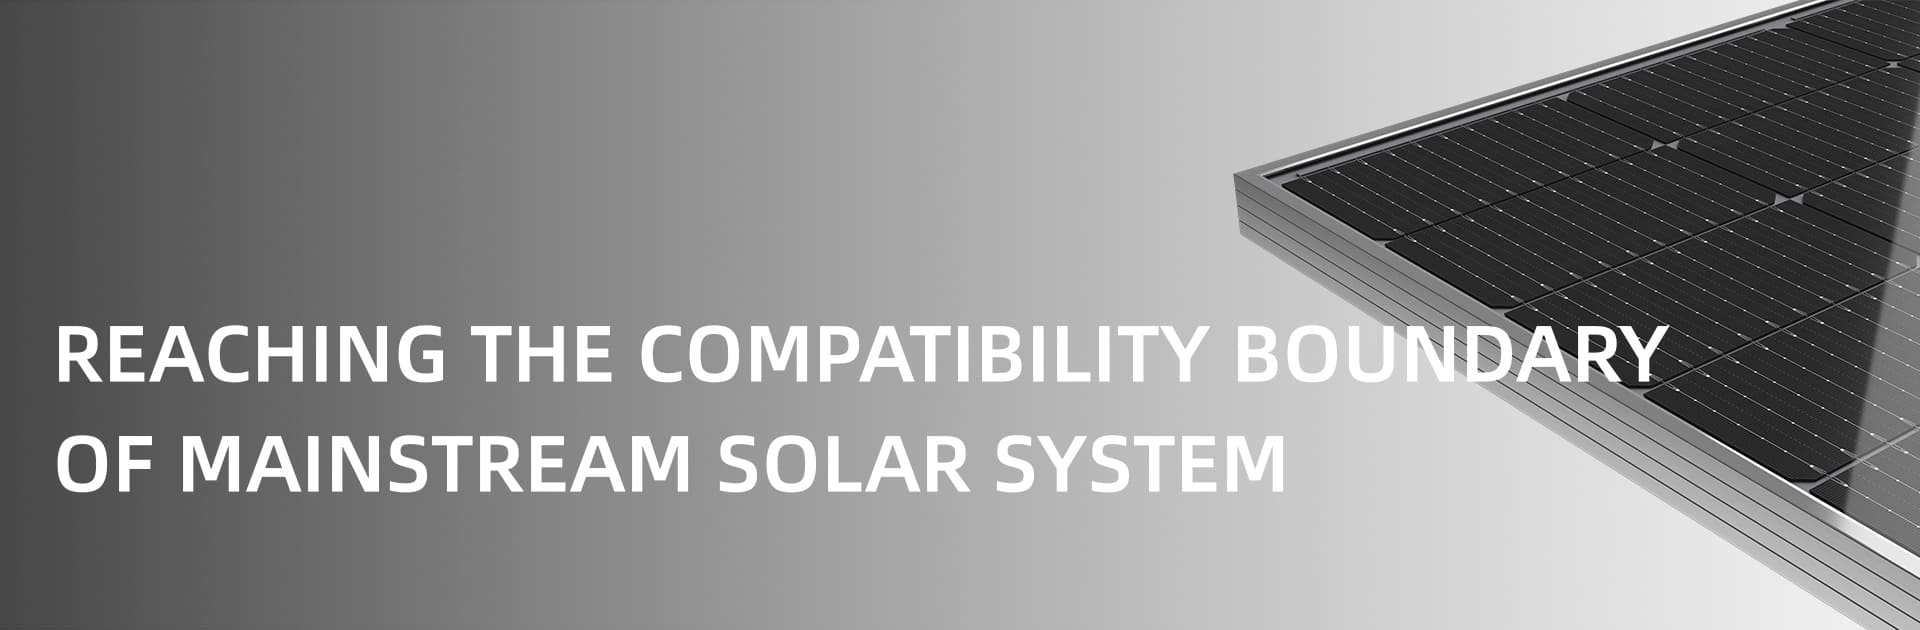 الألواح الشمسية M10 المخصصة PERC الألواح الشمسية ذات الزجاج المزدوج ثنائية الجانب